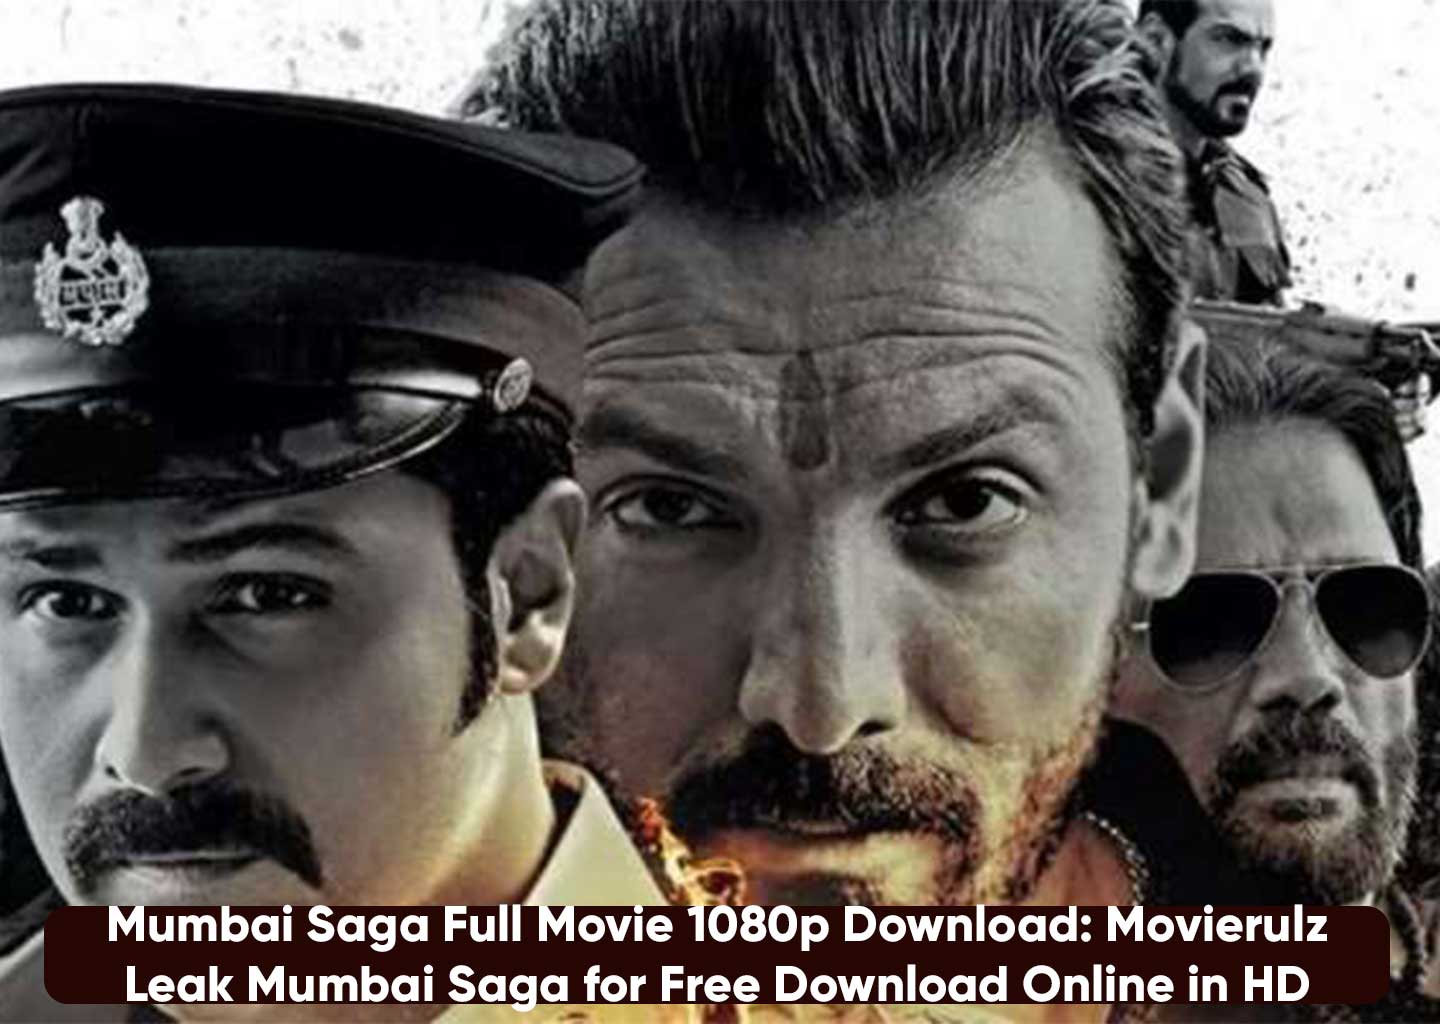 Mumbai Saga Full Movie 1080p Download: Movierulz Leak Mumbai Saga for Free Download Online in HD